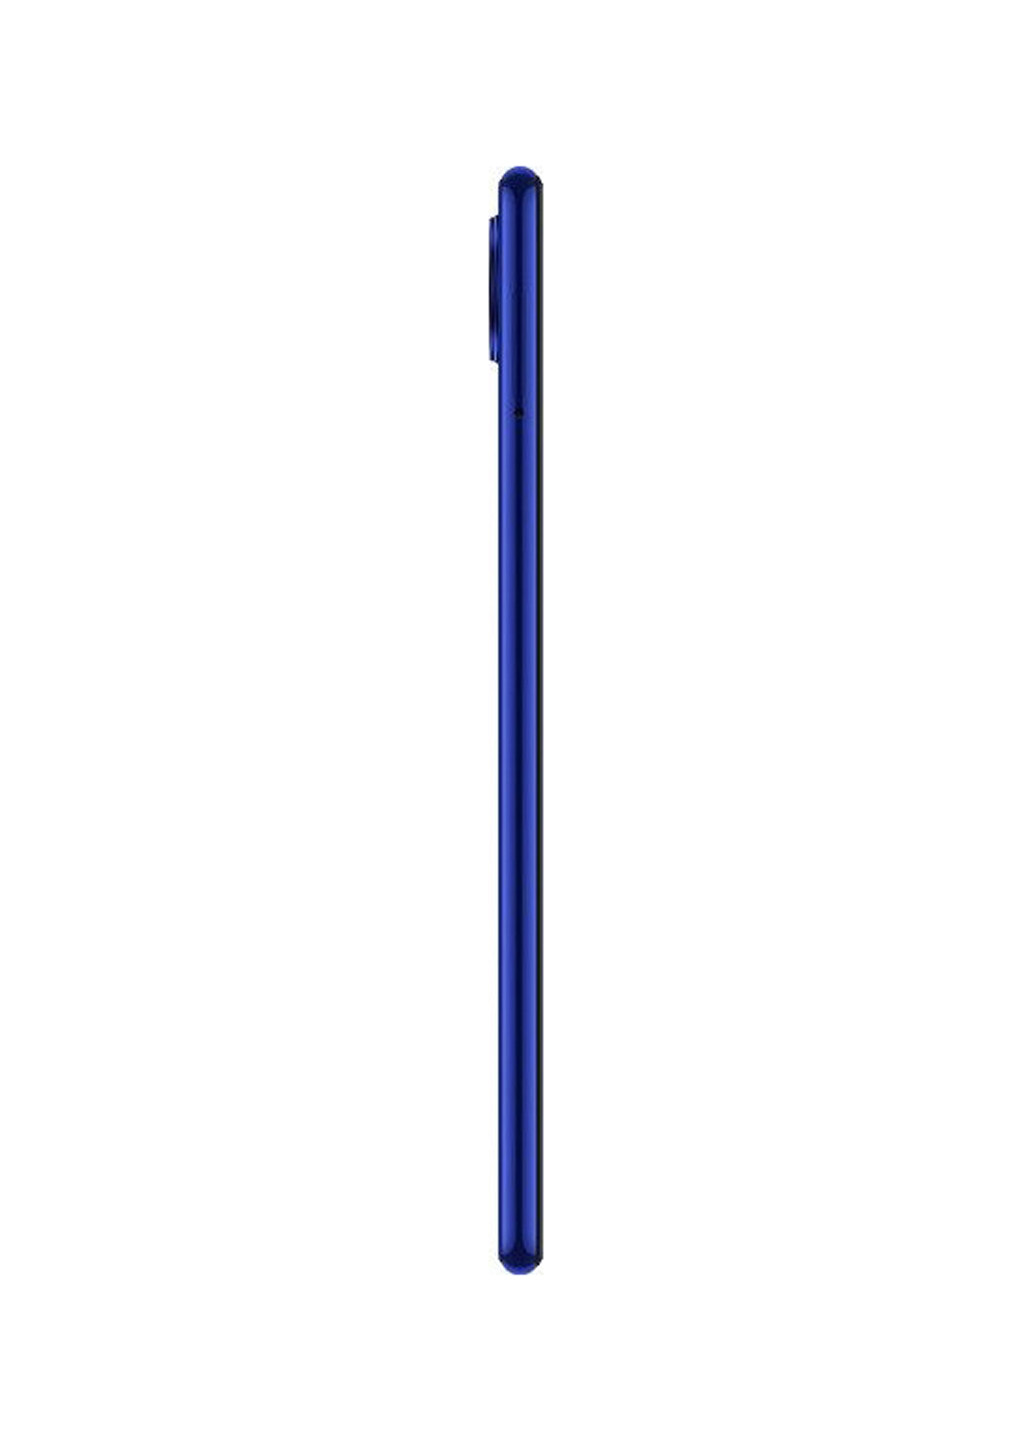 Смартфон Redmi Note 7 3 / 32GB Neptune Blue Xiaomi redmi note 7 3/32gb neptune blue (130569699)